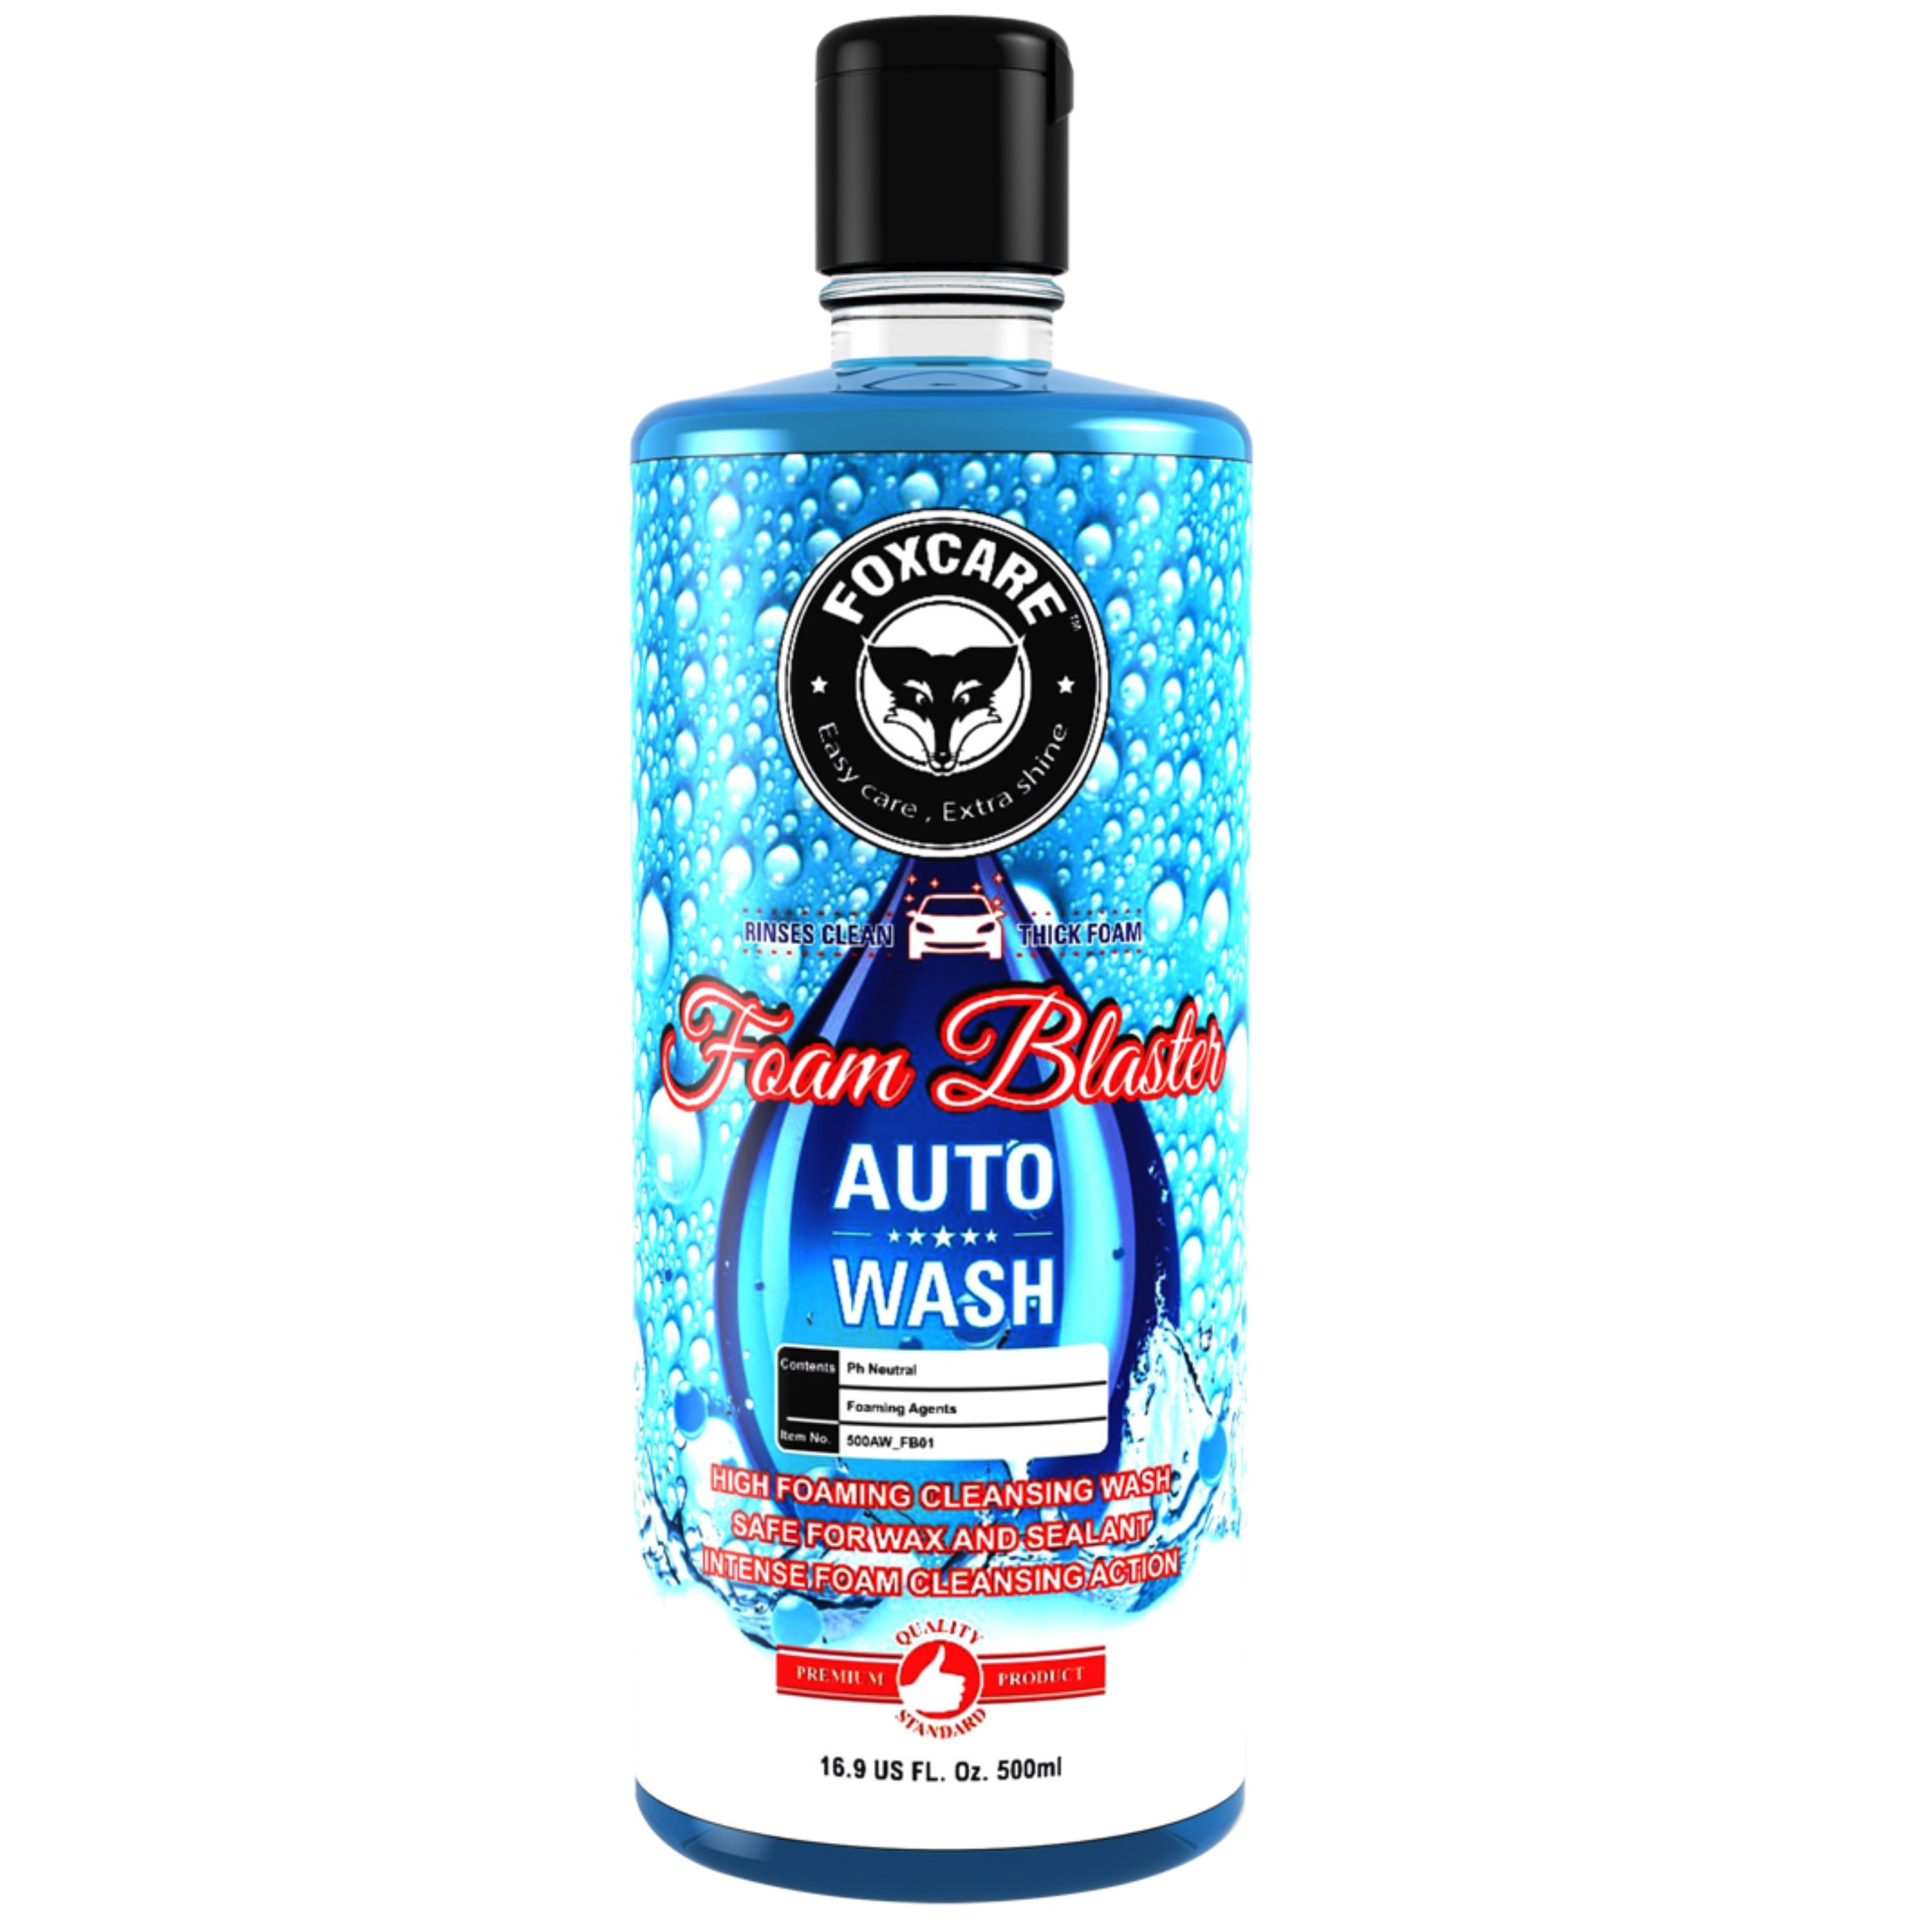 Foxcare Foam Blaster - Auto Wash Shampoo (500ml)